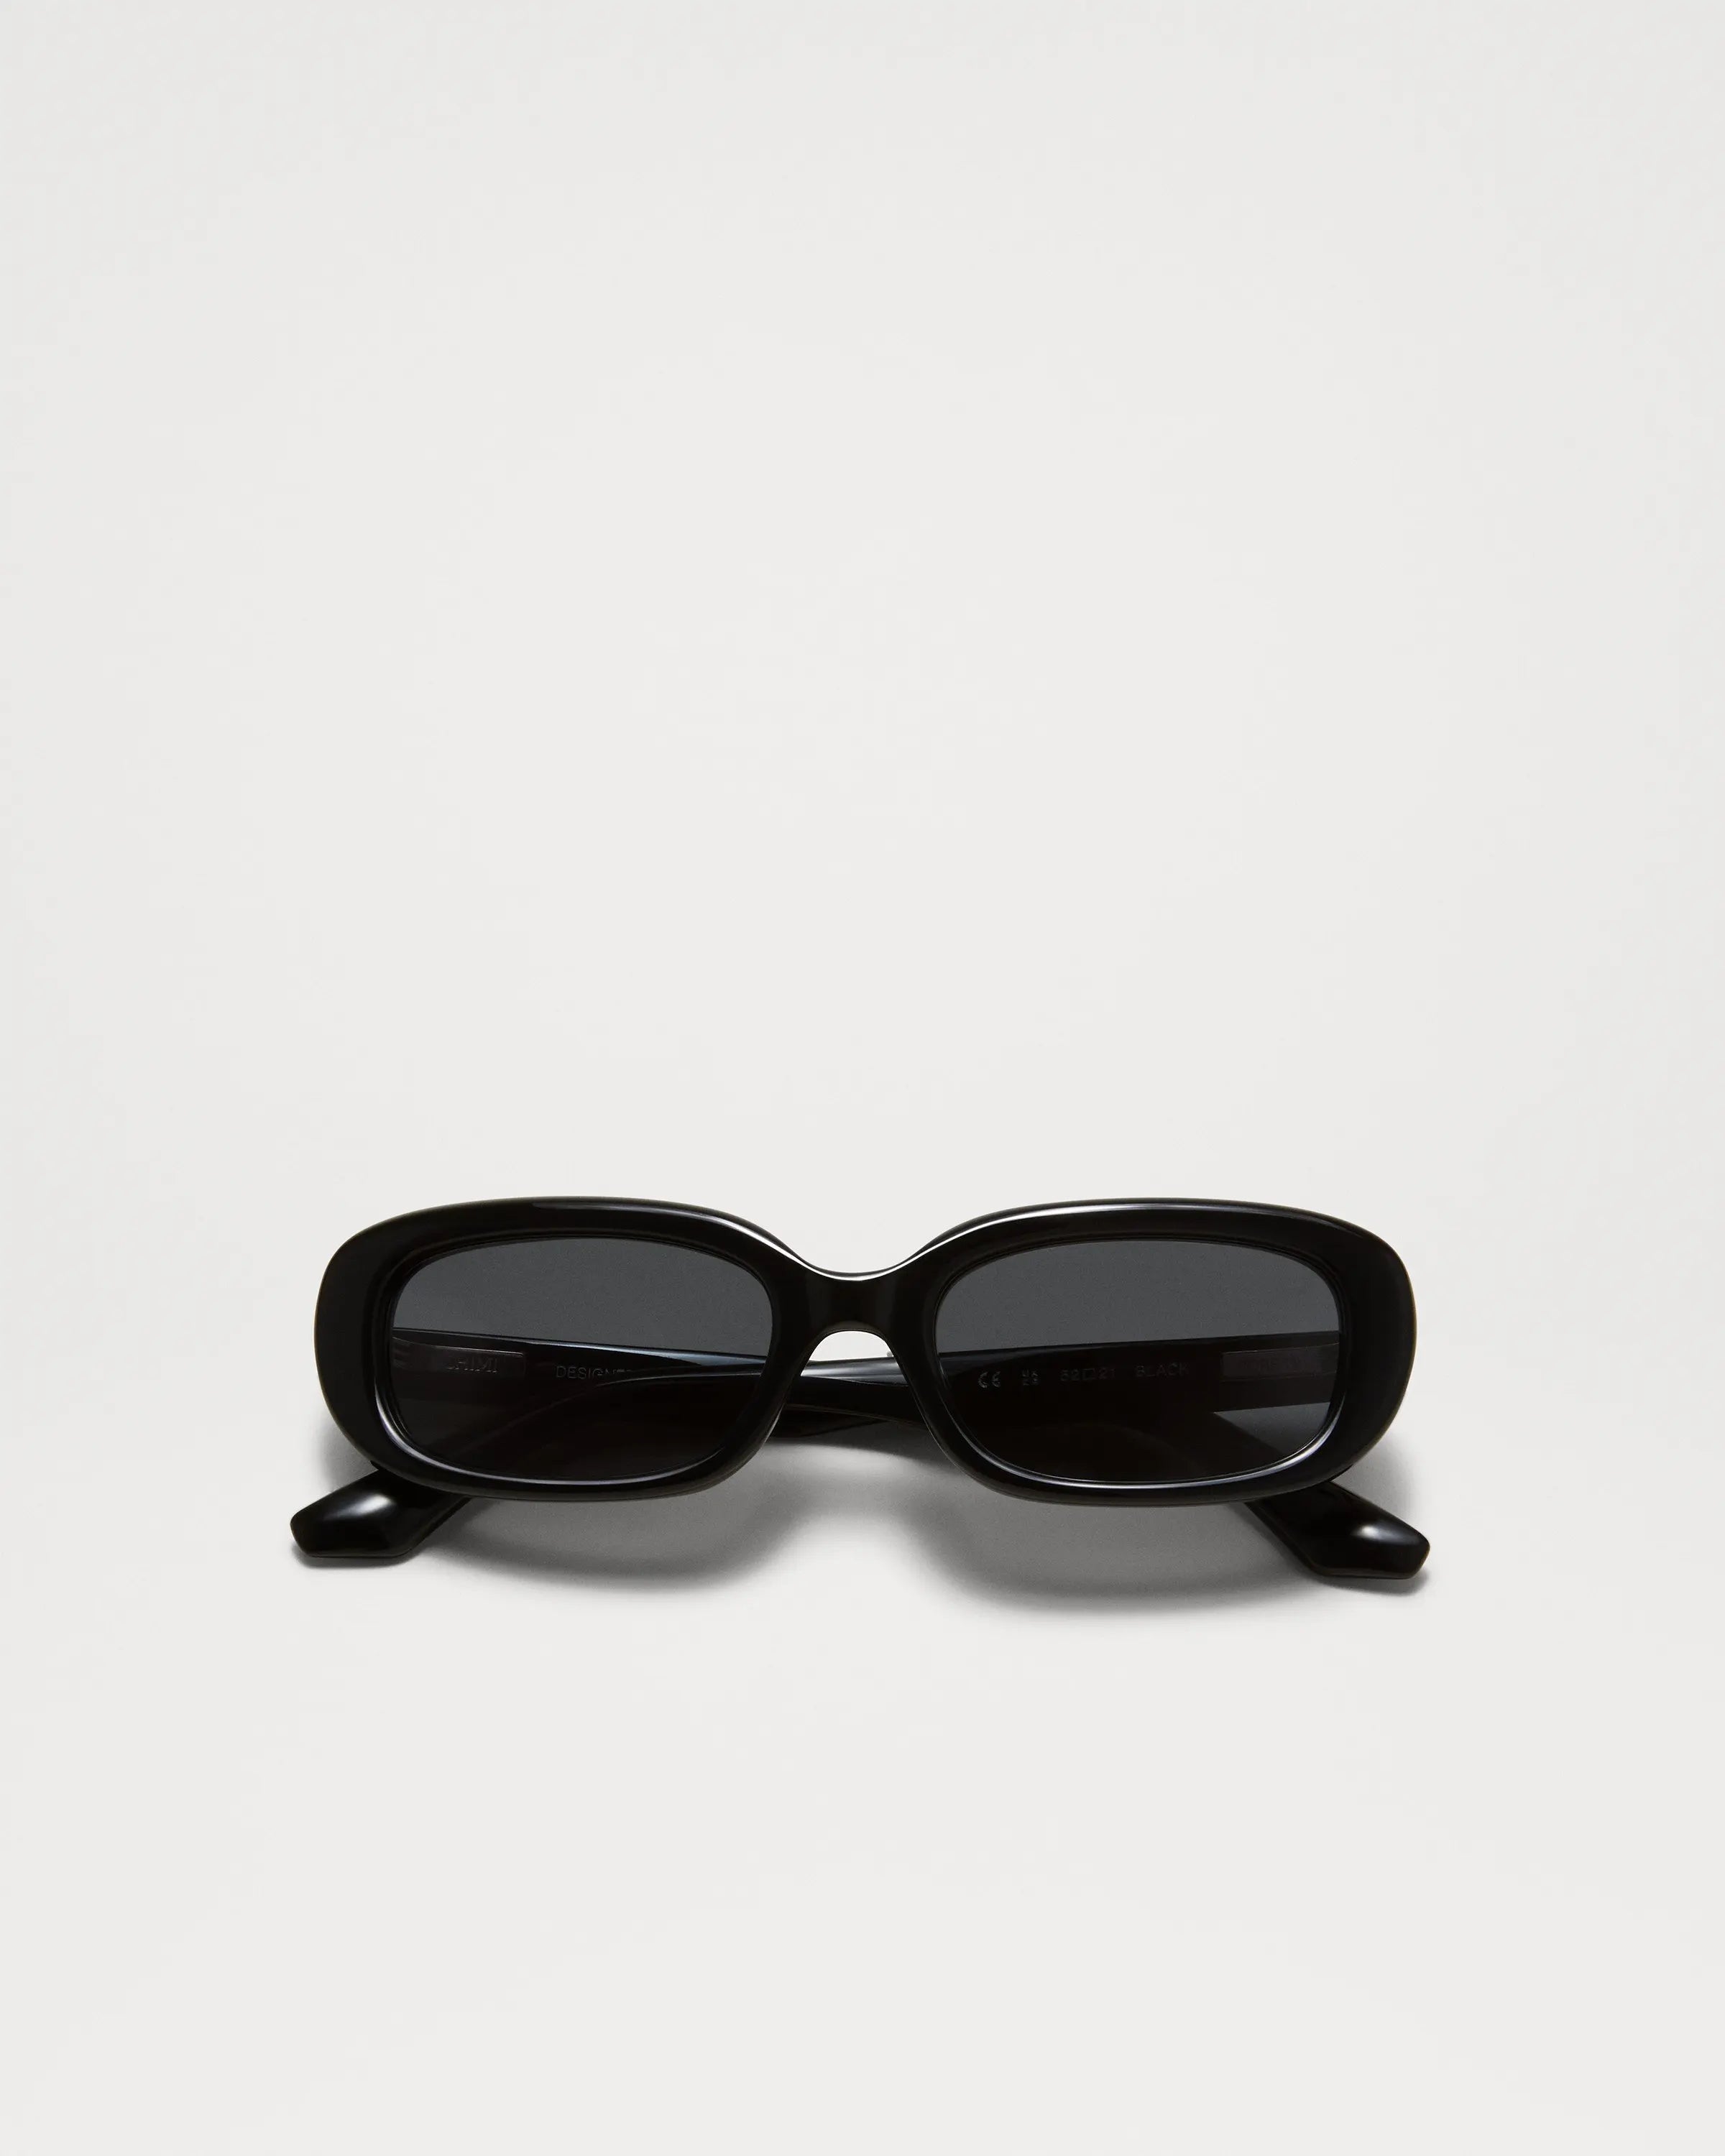 Black rectangular framed sunglasses